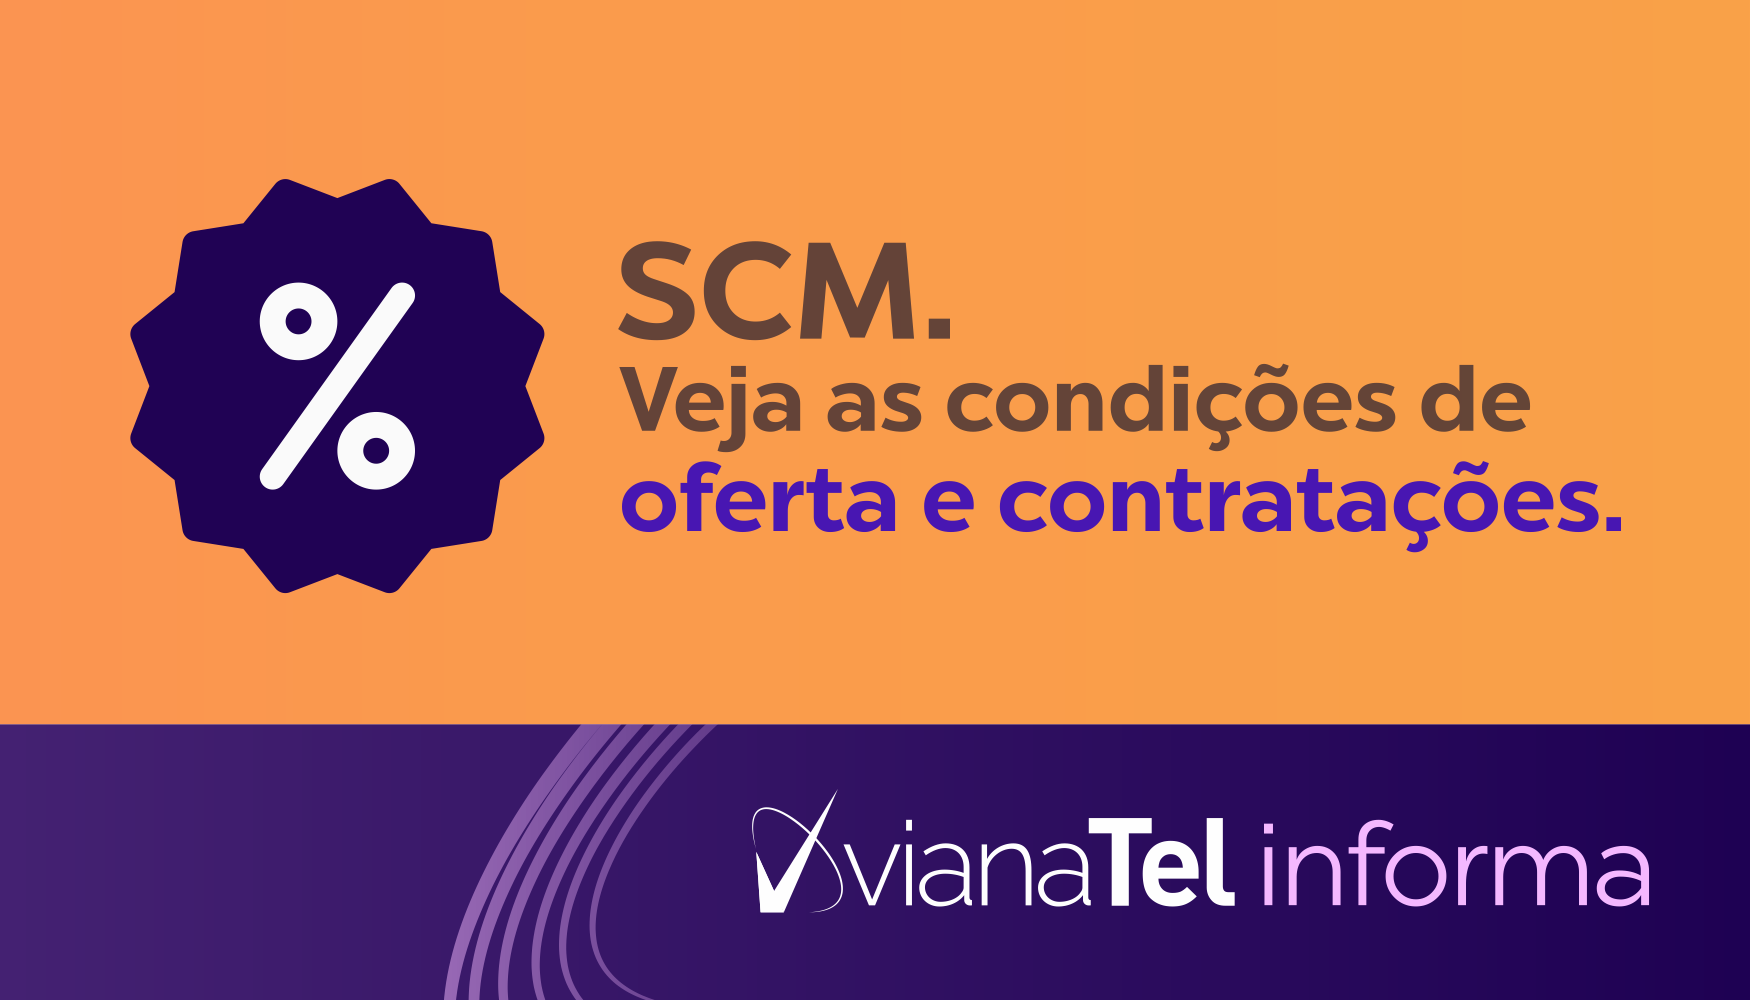 SCM - Veja as condições de oferta e contratações.